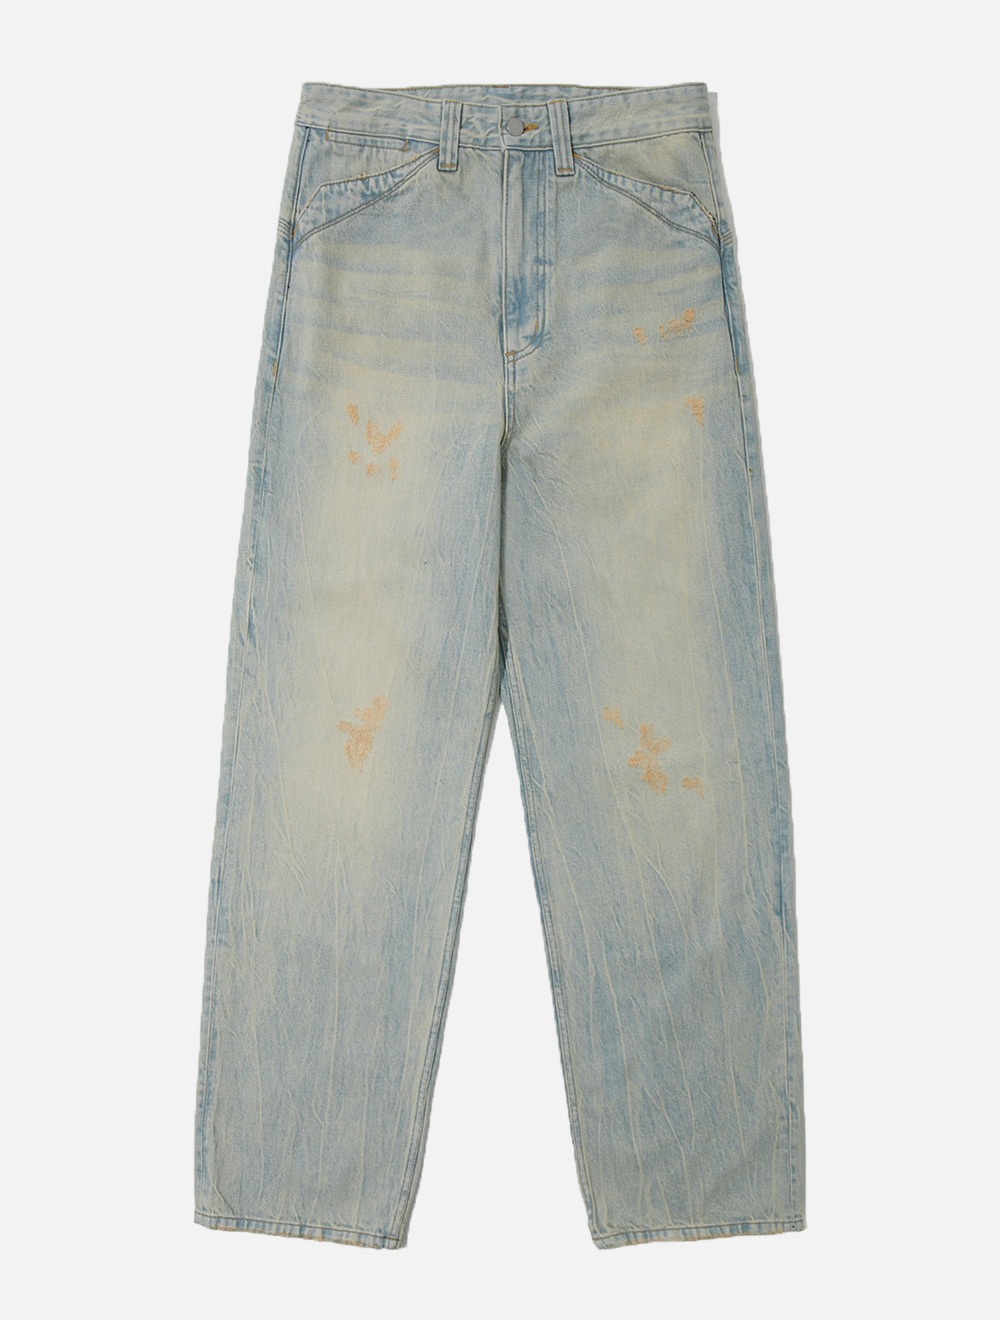 vintage washed denim pants (light blue)